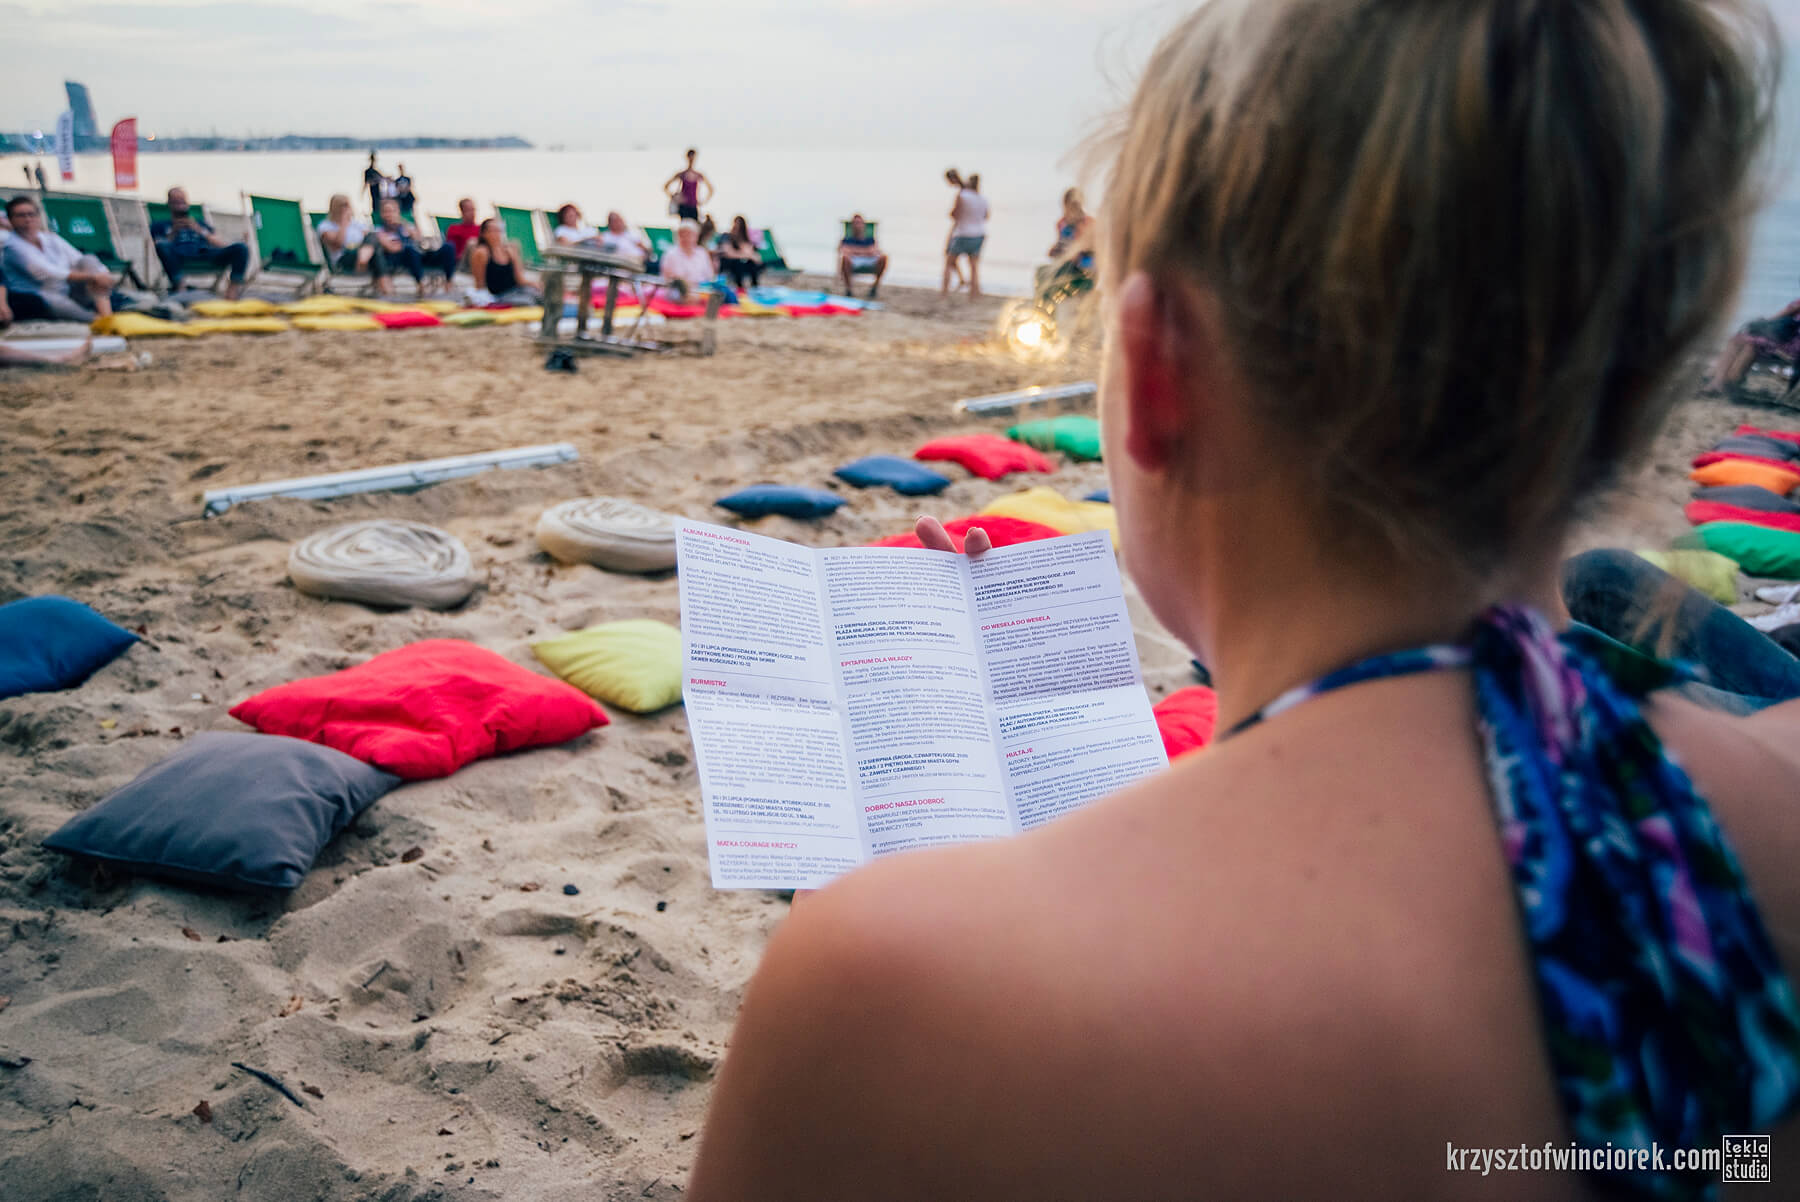 Plaża. Zdjęcie zrobione zza ramienia kobiety, która coś czyta. Na dalszym planie poduchy rozłożone na piasku oraz morze.